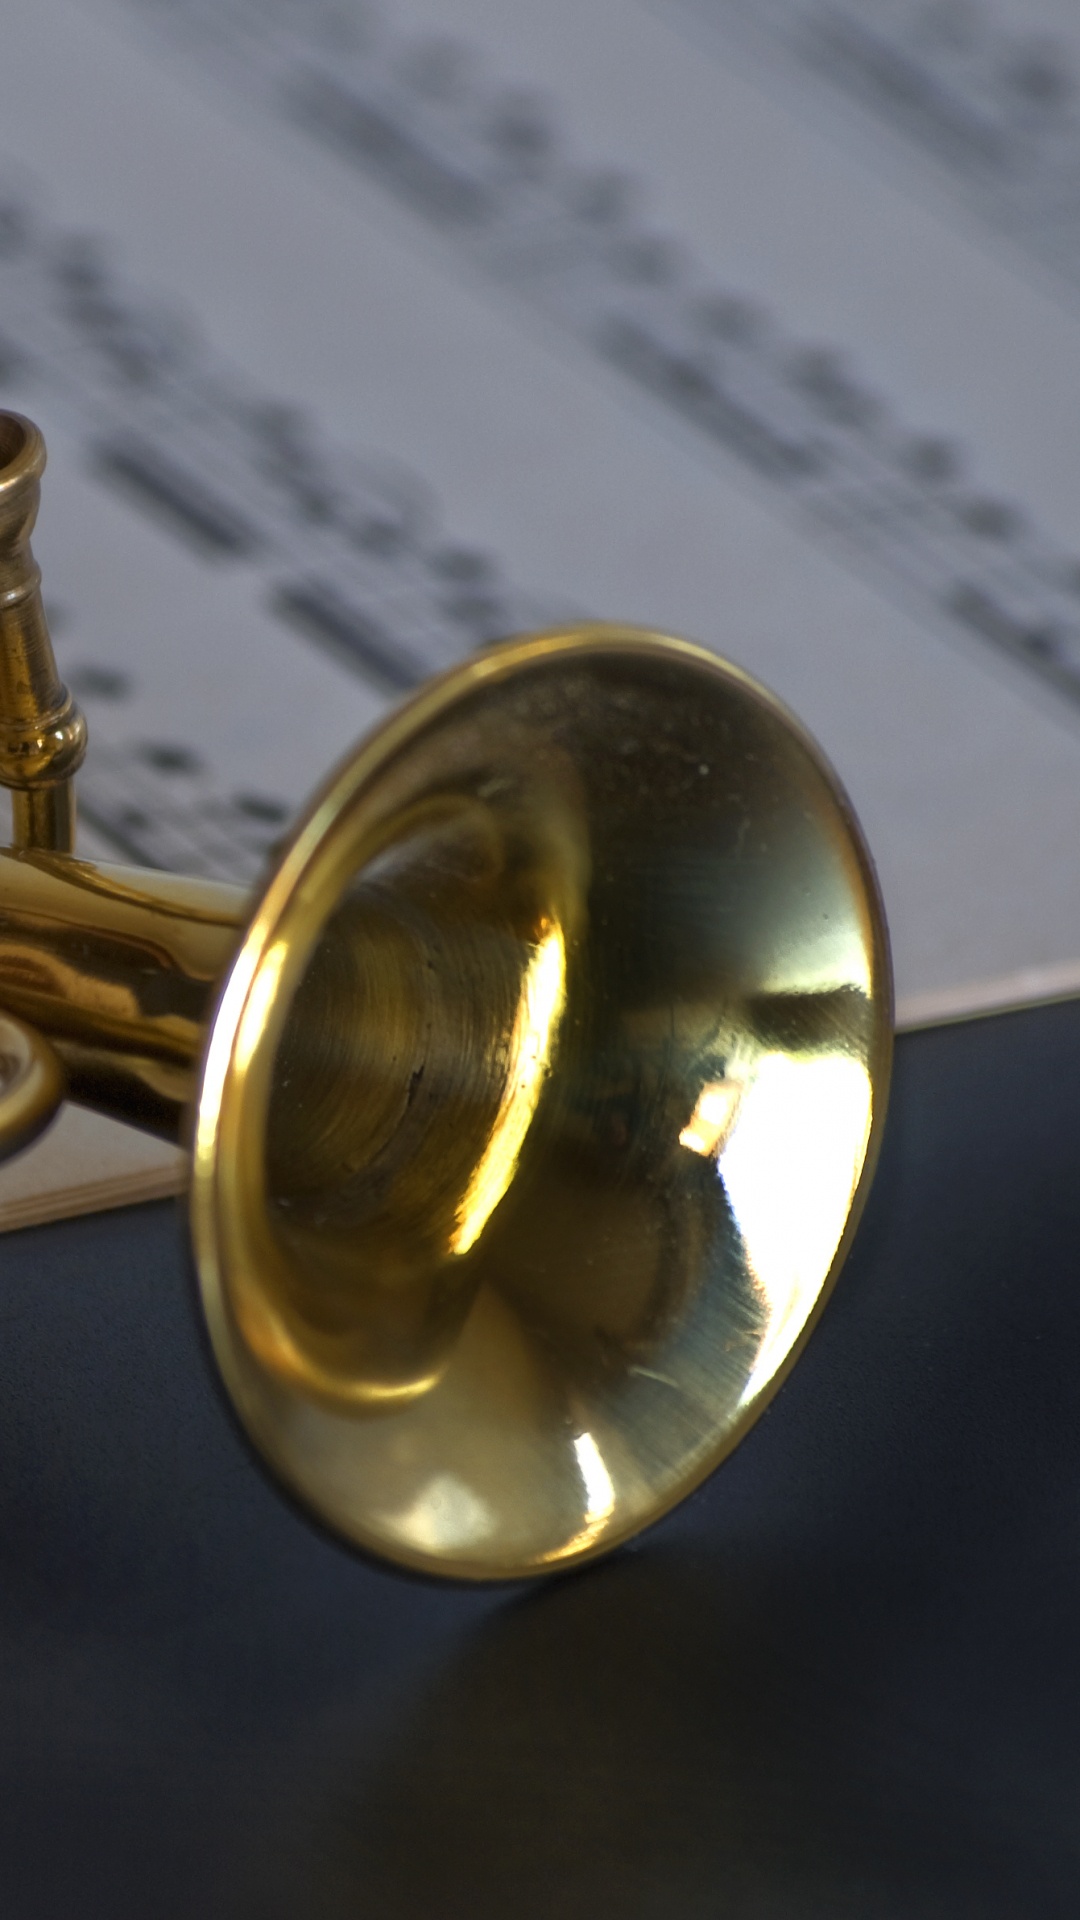 Instrument de Cuivre, Instrument à Vent, Trompette, Mellophone, Euphonium. Wallpaper in 1080x1920 Resolution